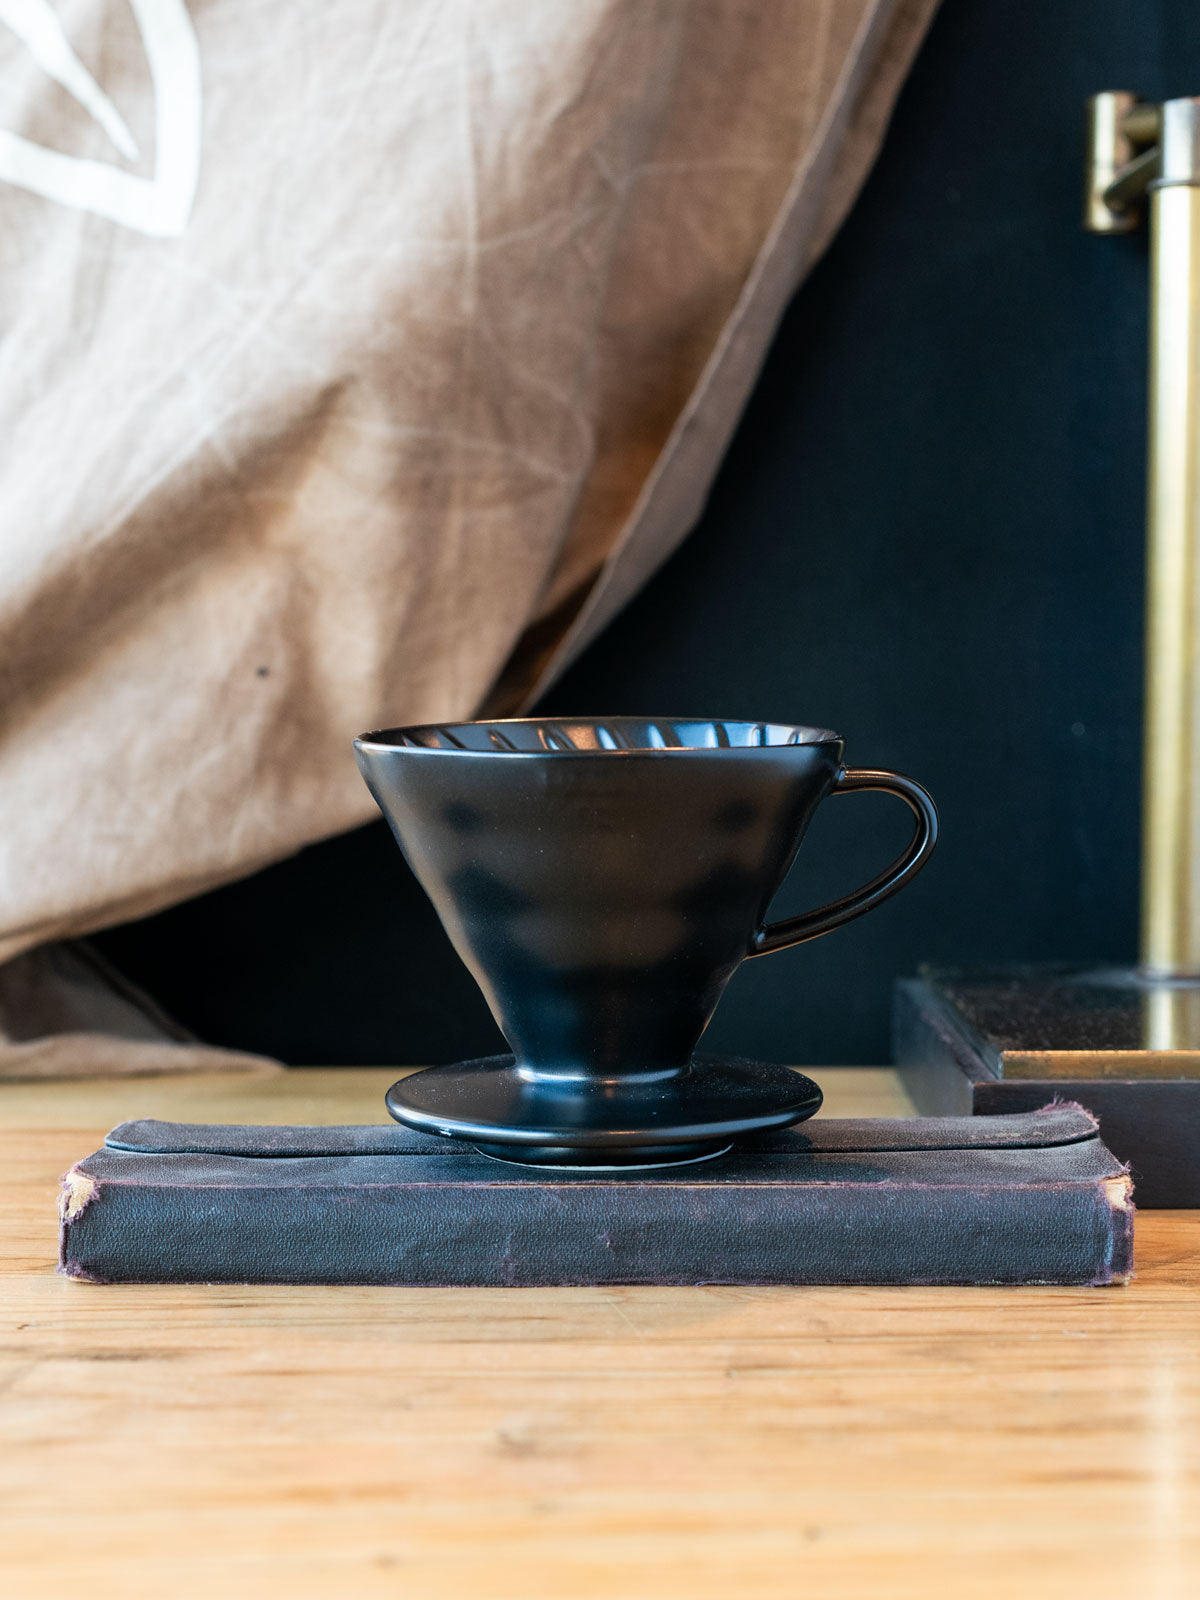 Pour Over Coffee Dripper - V60 Pour-Over Coffee | EspressoWorks Black